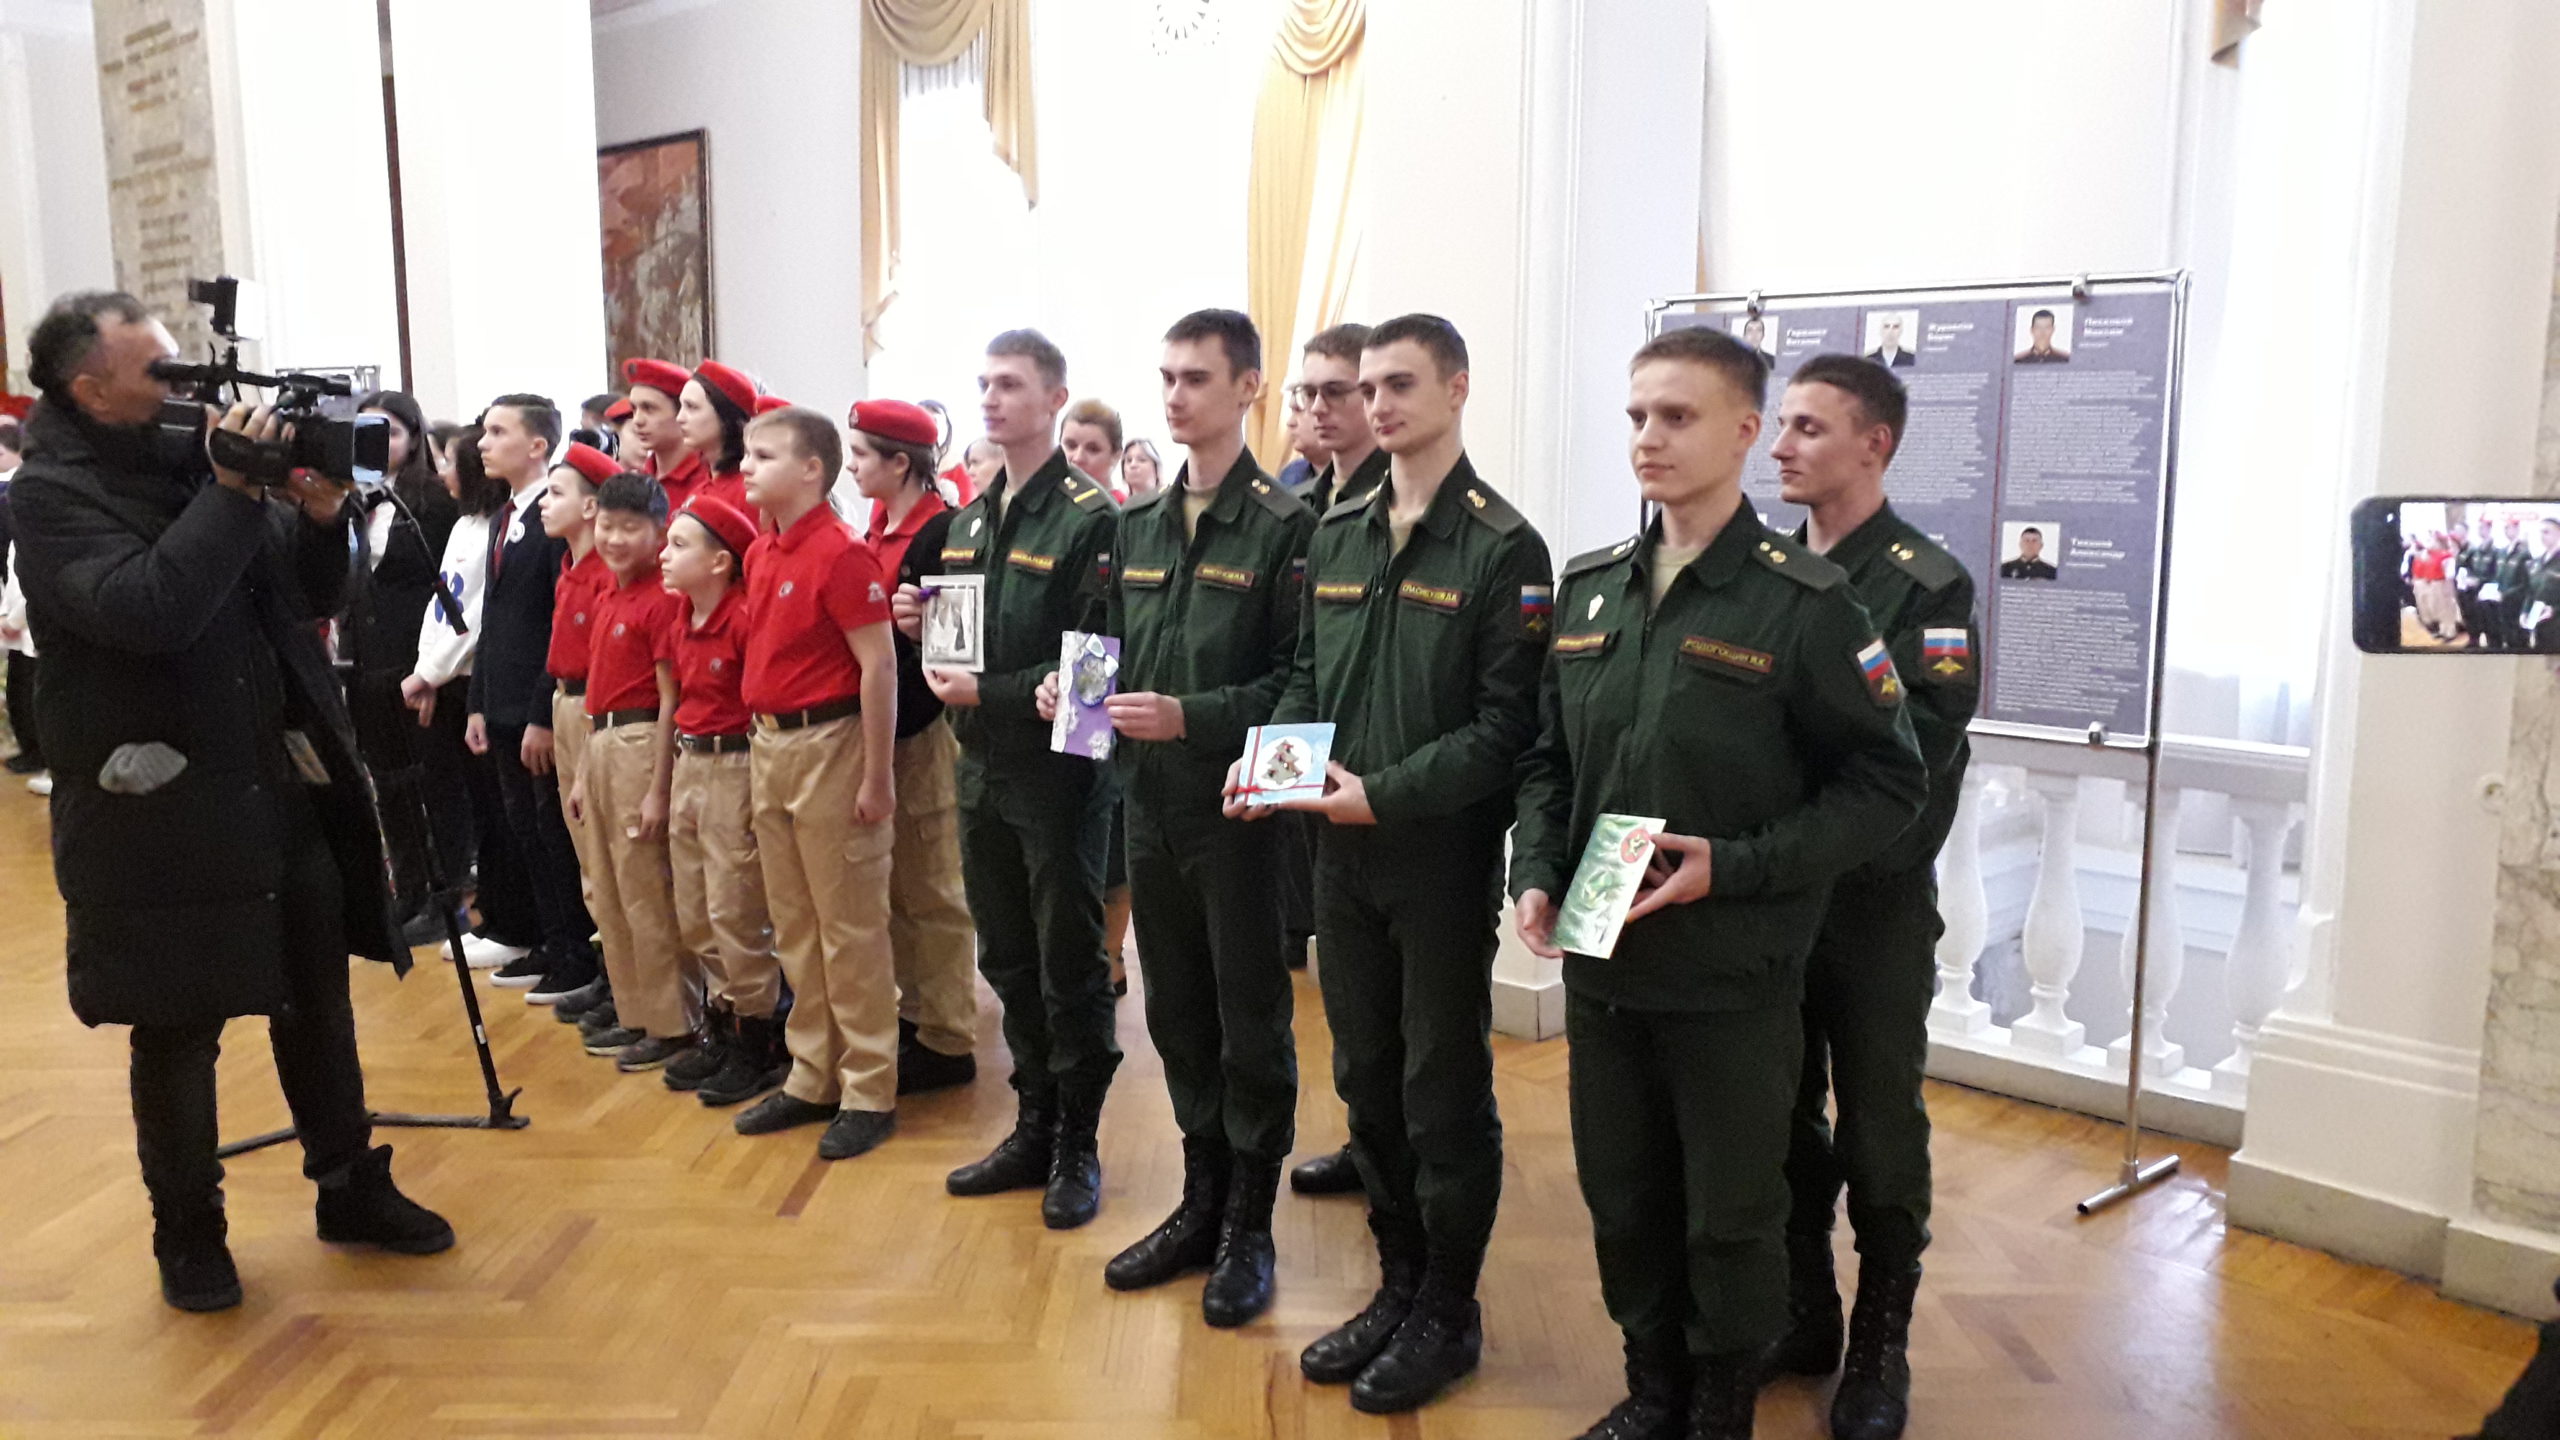 Вы сейчас просматриваете Всероссийская молодежная патриотическая акция «Фронтовая открытка» Министерства обороны Российской Федерации